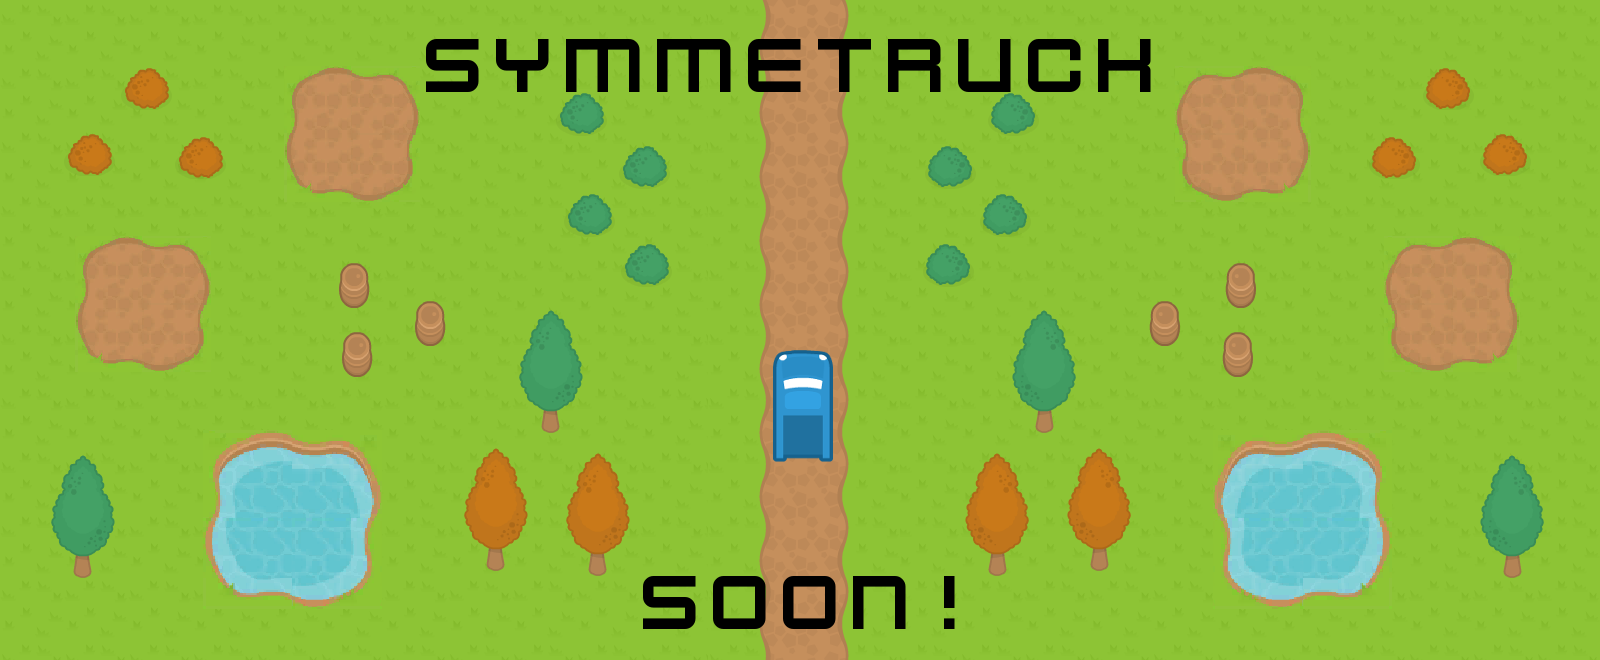 Symmetruck - Soon!